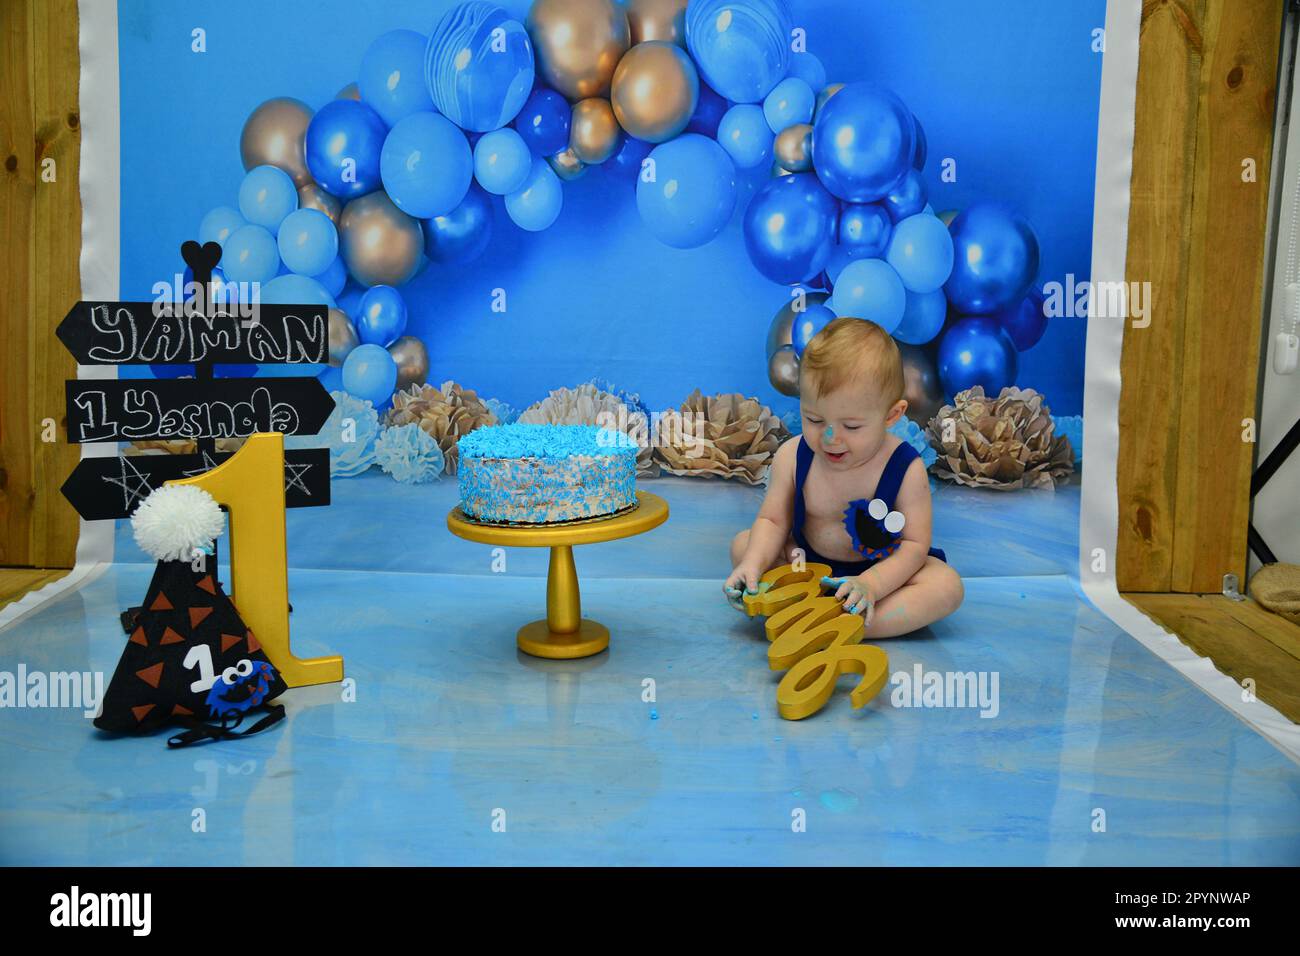 decoracion baby shower varon - Buscar con Google